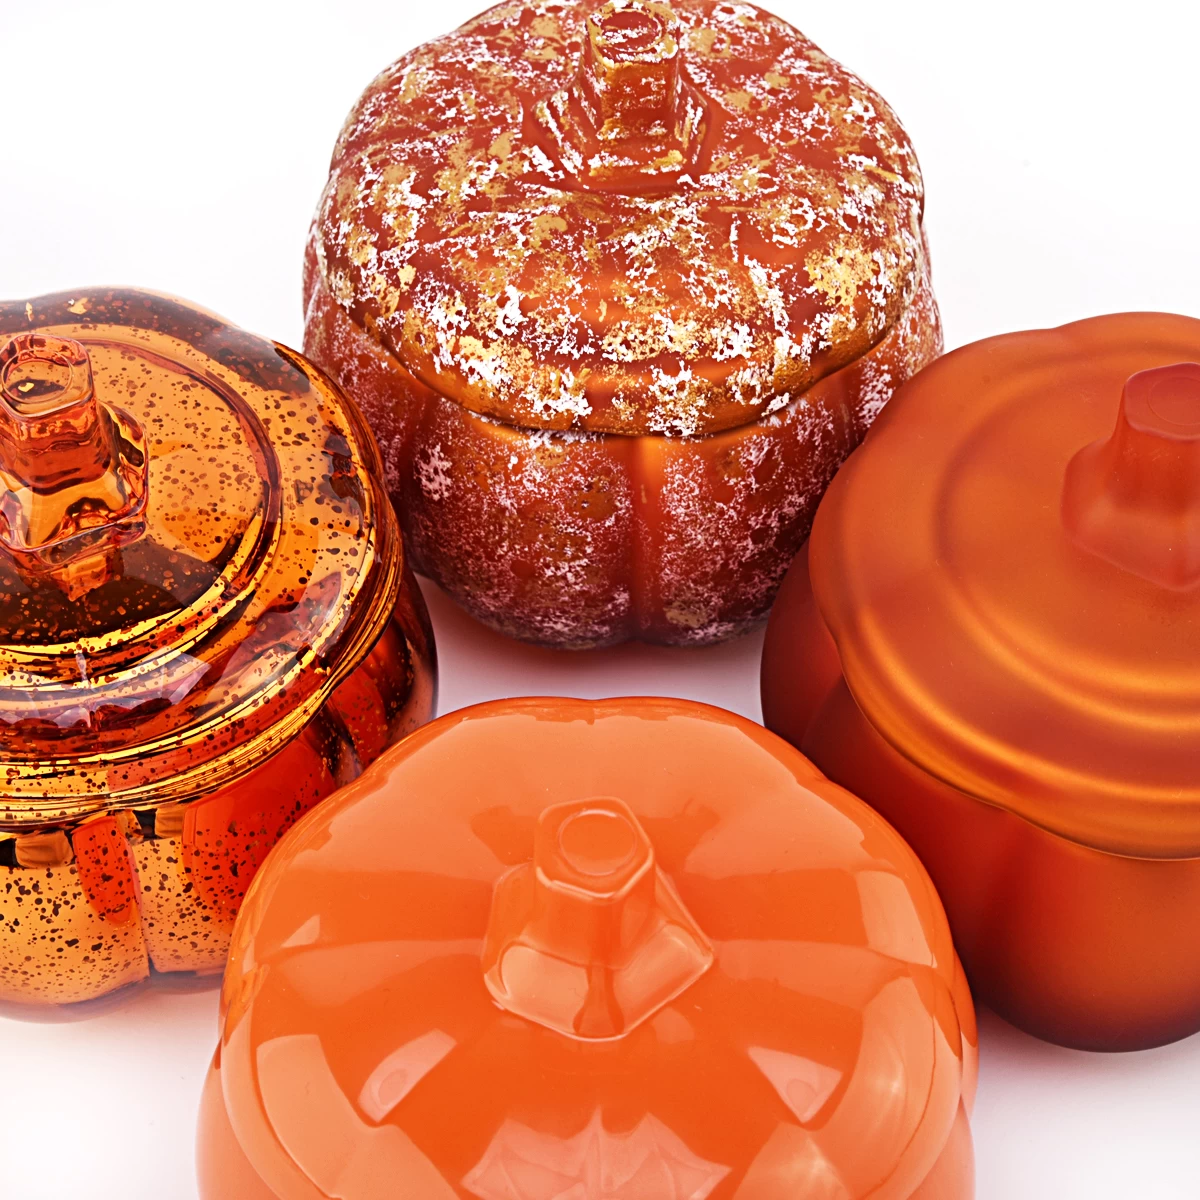 ハロウィーンオレンジカボチャの形をしたキャンドルグラスガラスキャンディージャーとカボチャガラスキャンドルジャー